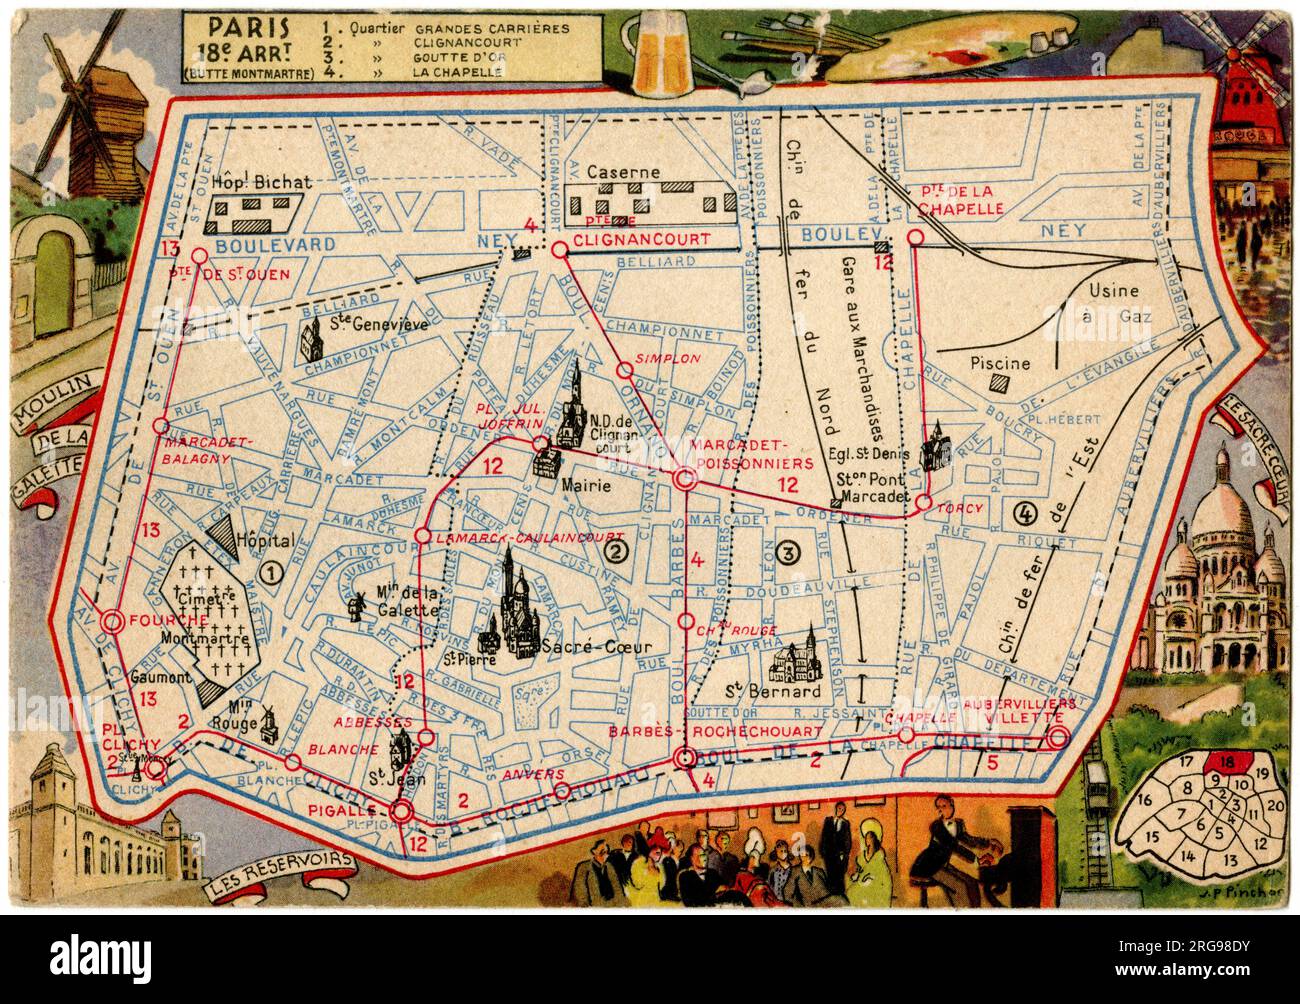 Karte des Butte Montmartre, 18. Arrondissement, Paris, Frankreich. Stockfoto